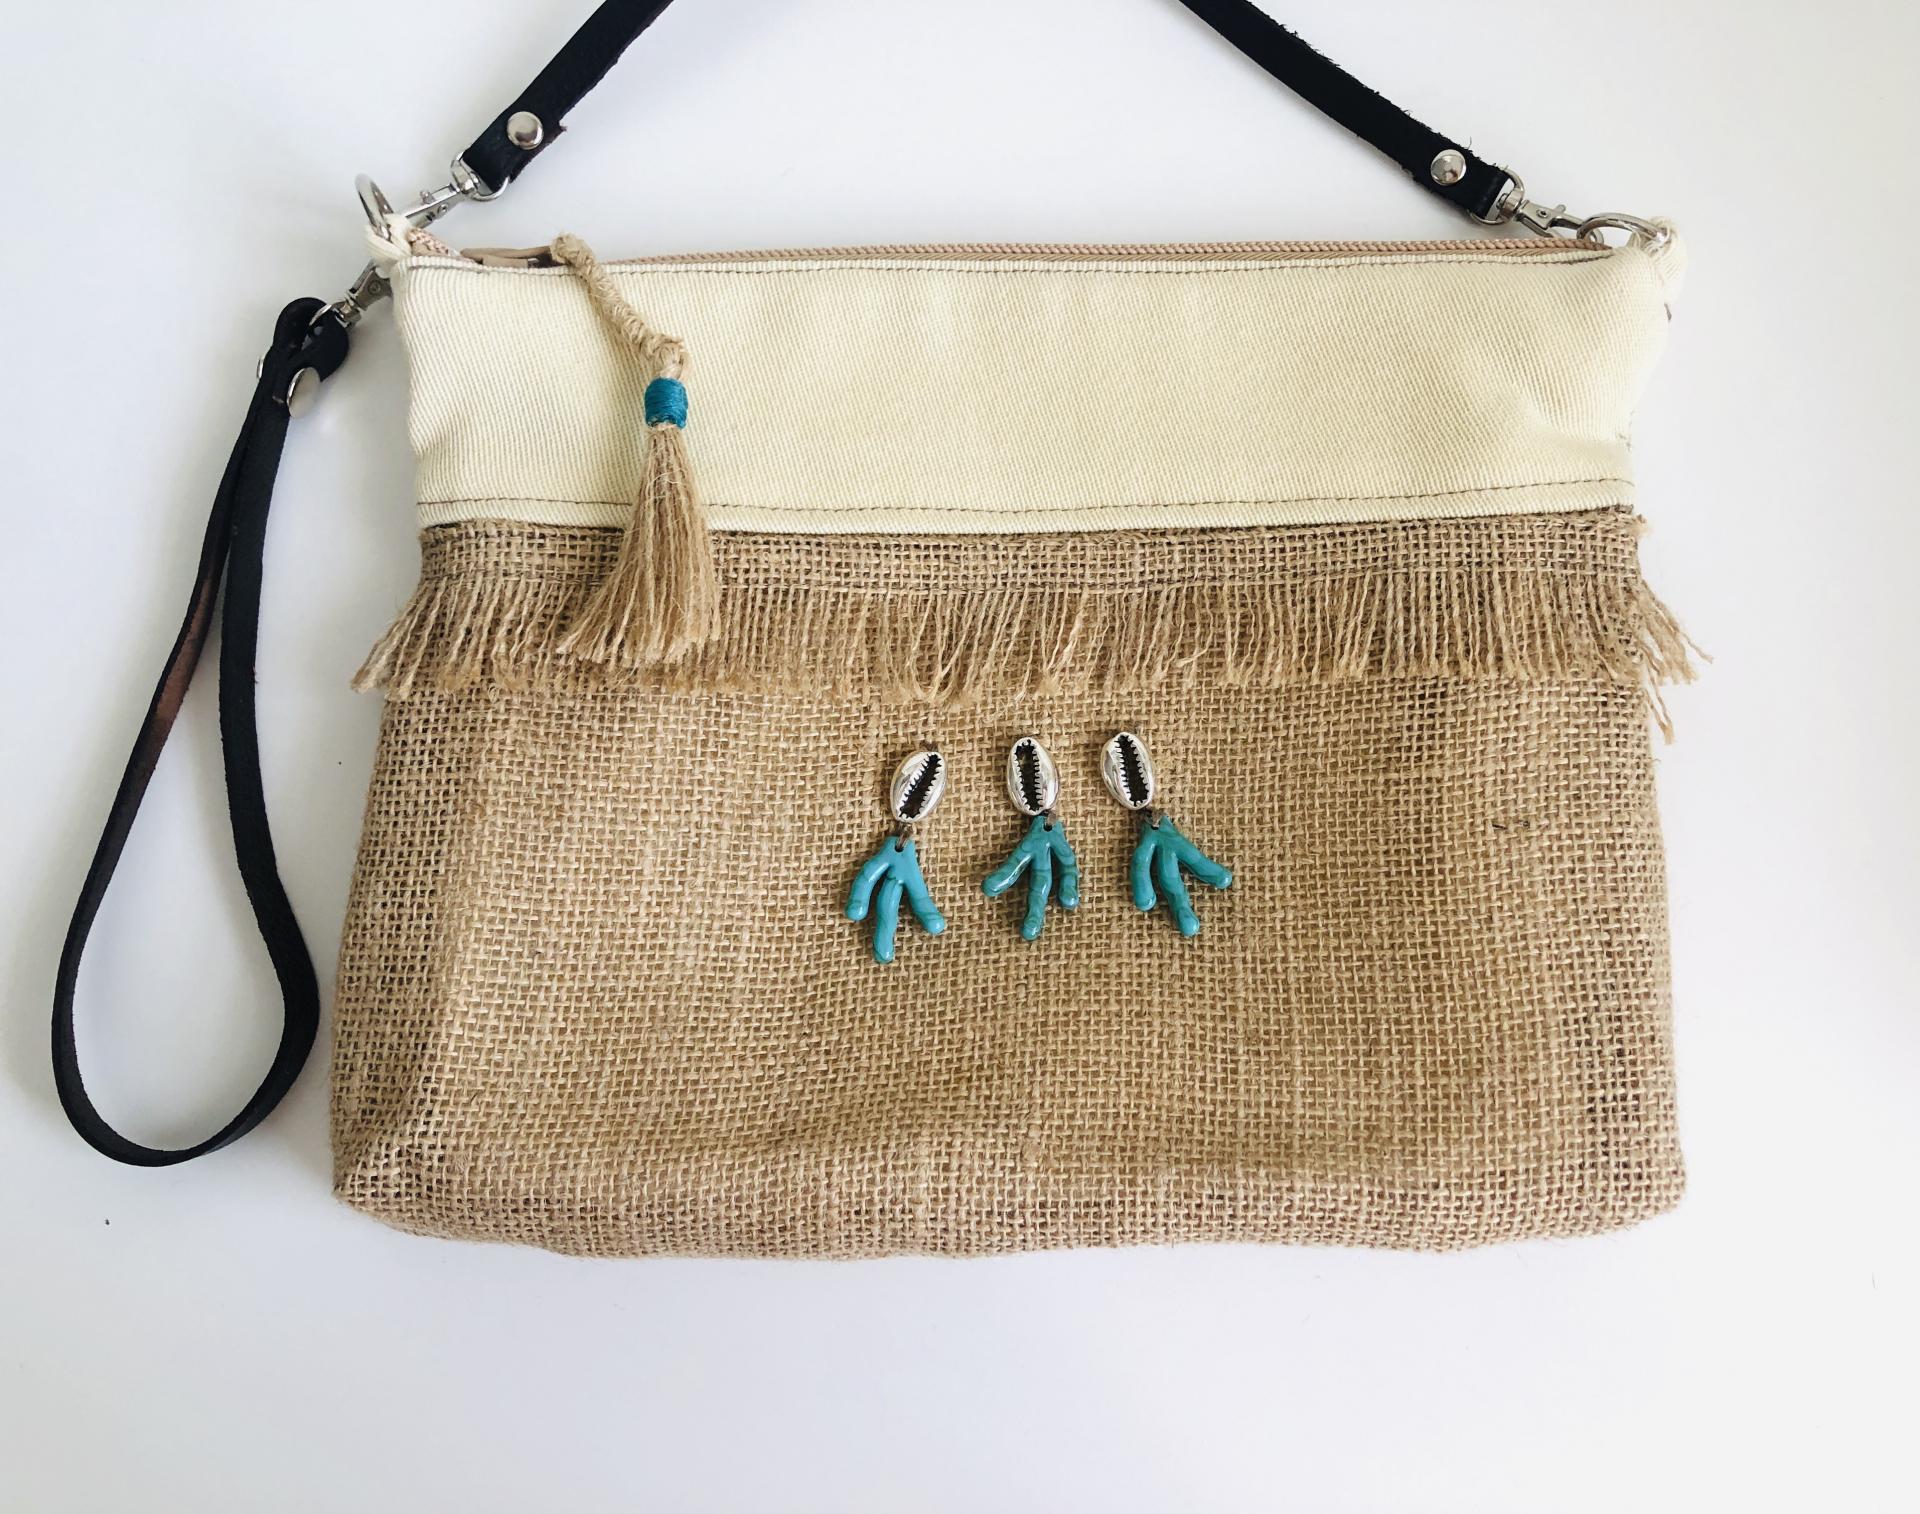 Bolso en tela de saco, tela color crema con detalles plateados y turquesas